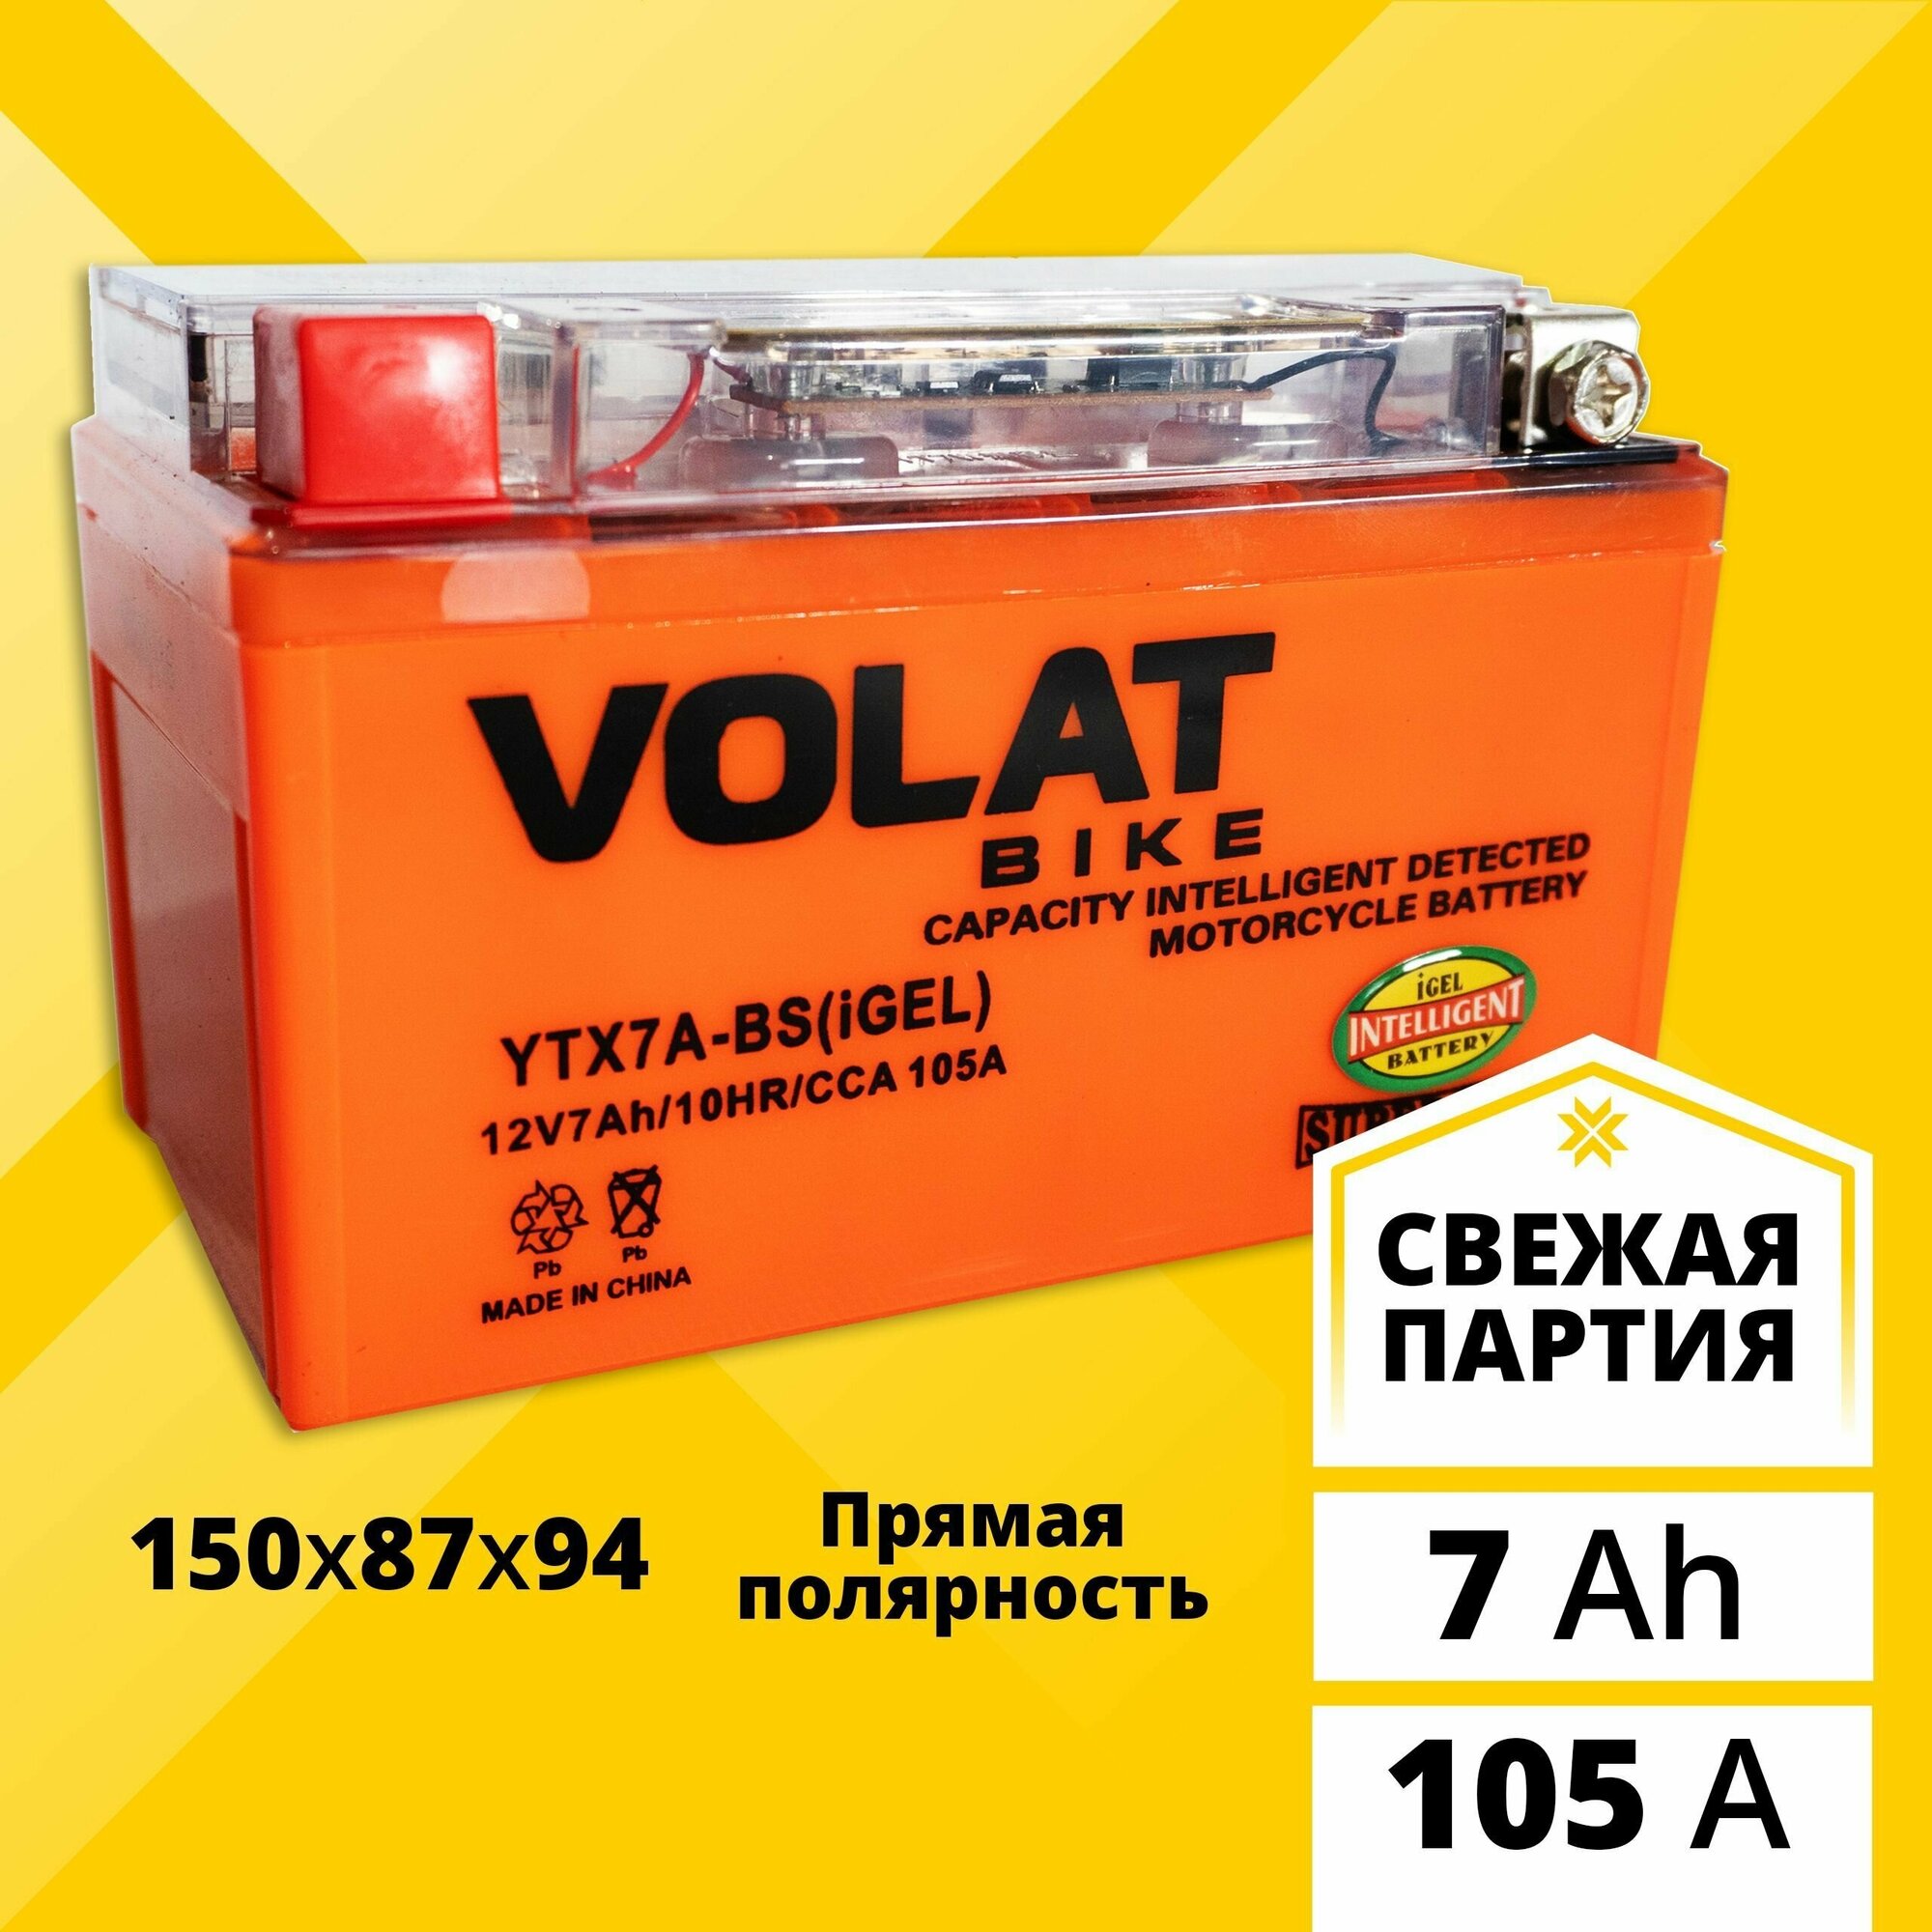 Аккумулятор для мотоцикла 12в гелевый 7 Ah 105 A прямая полярность VOLAT YTX7A-BS(iGEL) акб 12v GEL для мопеда скутера квадроцикла 150x87x94